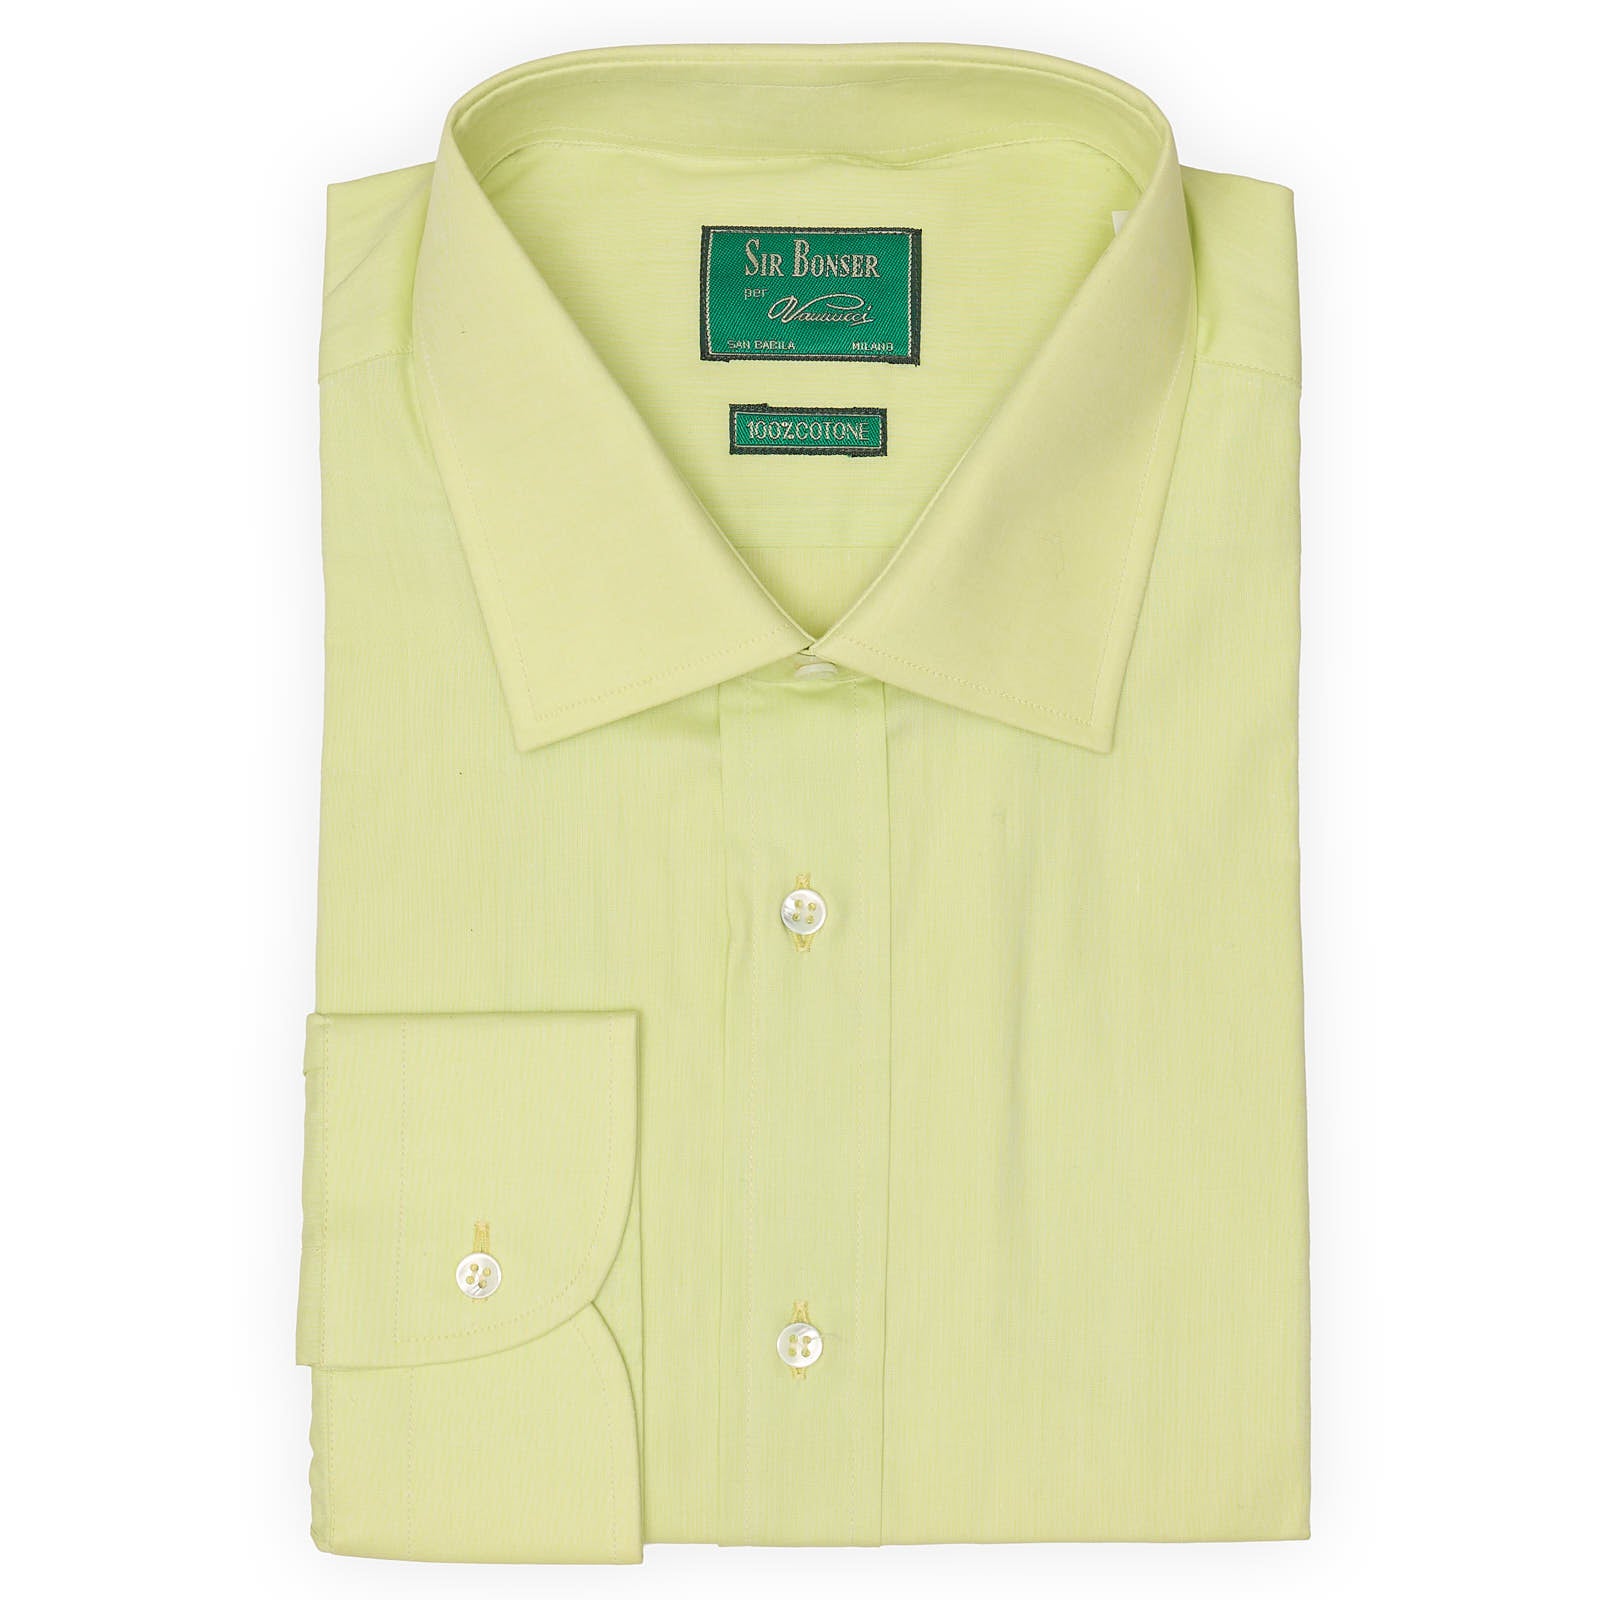 SIR BONSER for Vannucci Mint Green Cotton Dress Shirt EU 44 NEW US 17.5